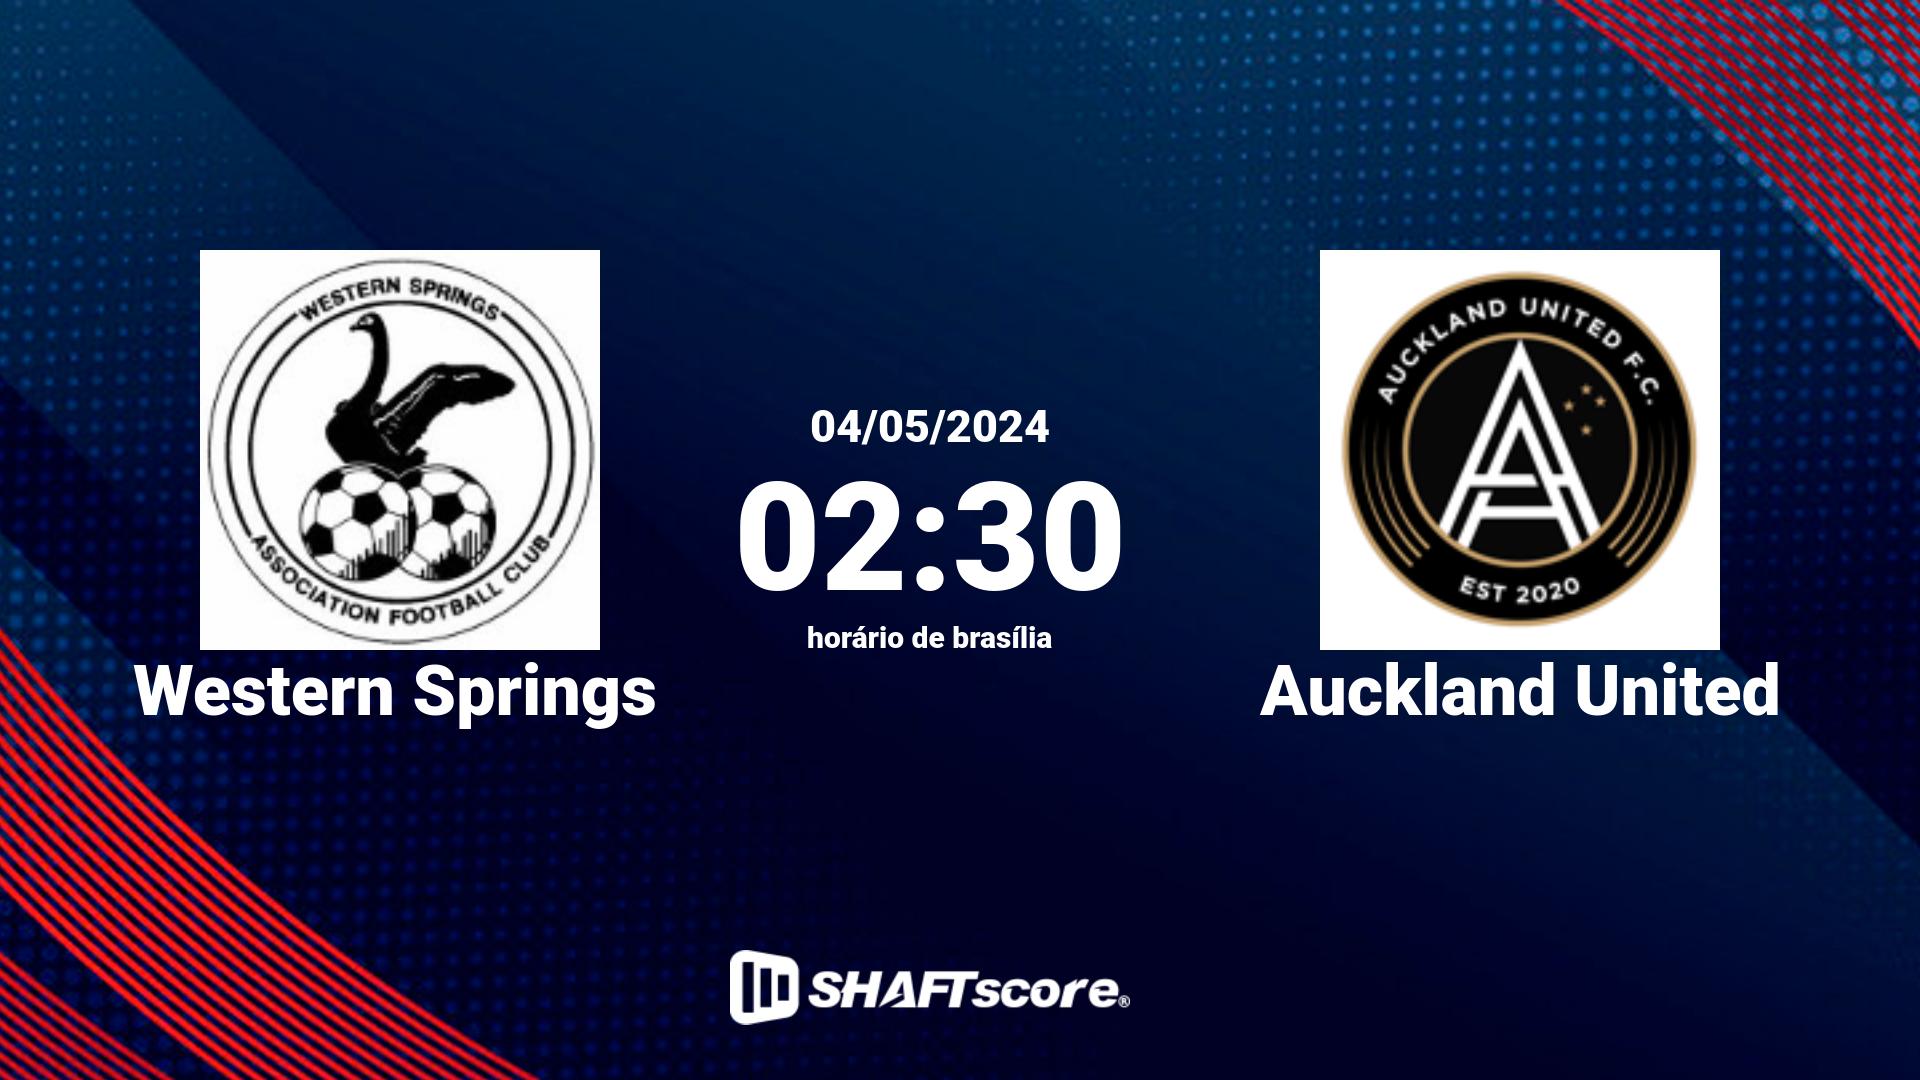 Estatísticas do jogo Western Springs vs Auckland United 04.05 02:30